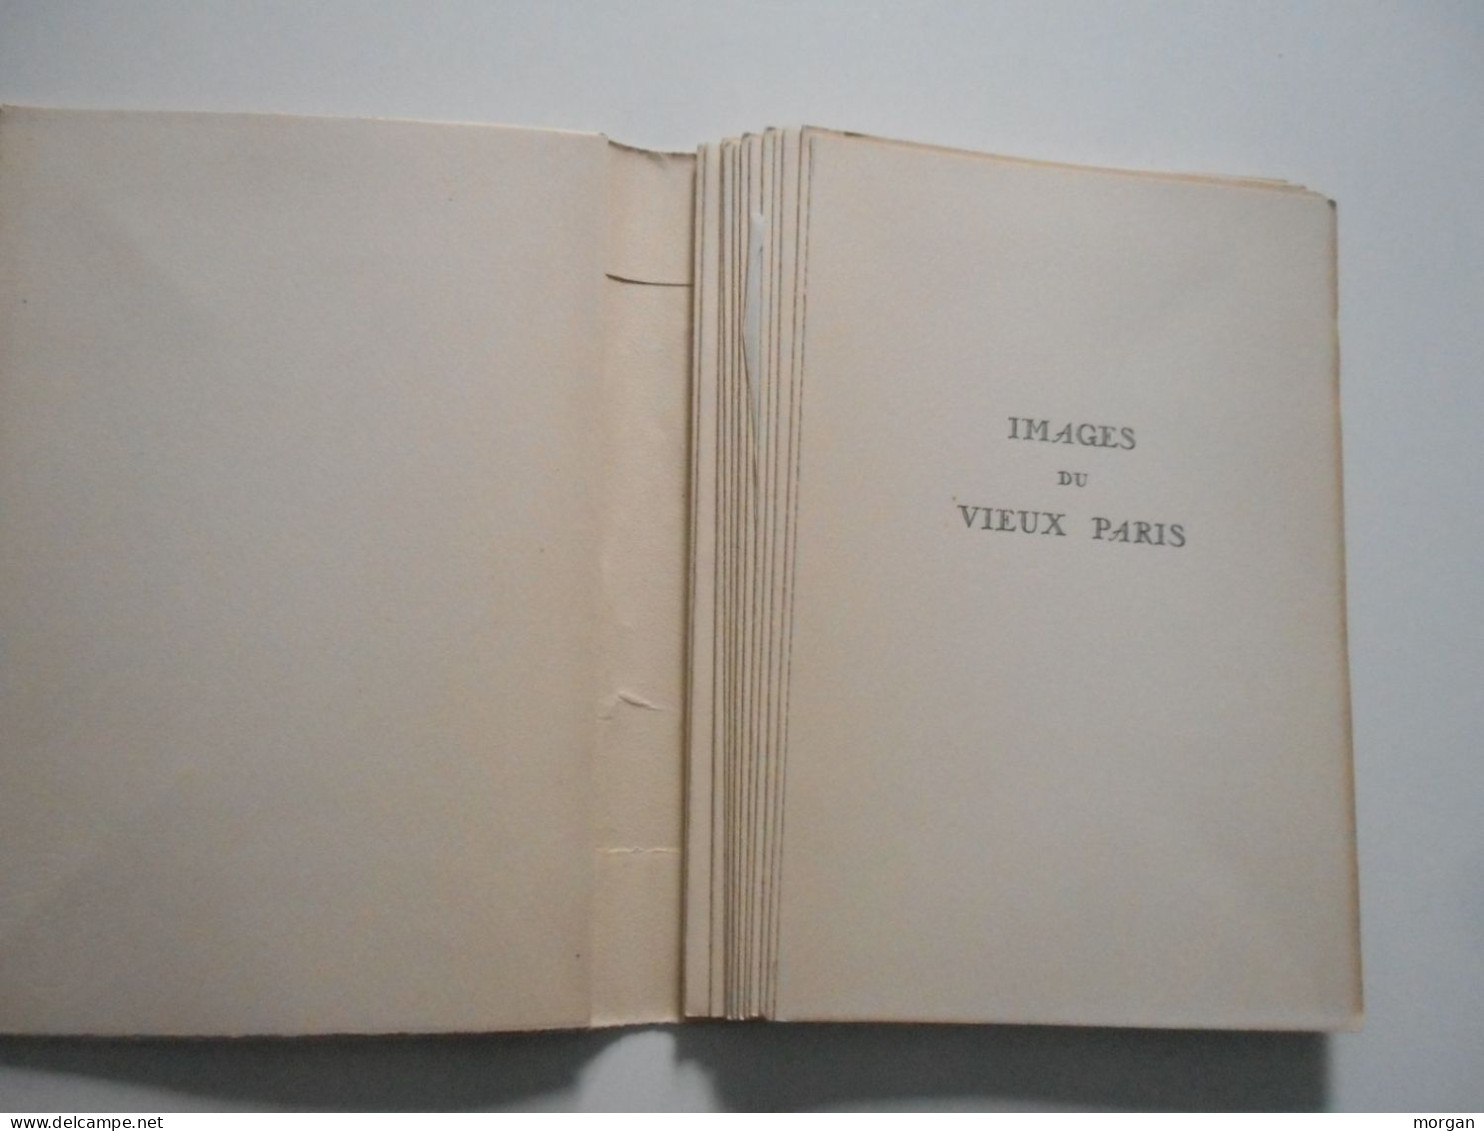 IMAGES DU VIEUX PARIS, 1951, André SALMON, POINTES SECHES DE CH. SAMSON, AUX HEURES CLAIRES - Parigi